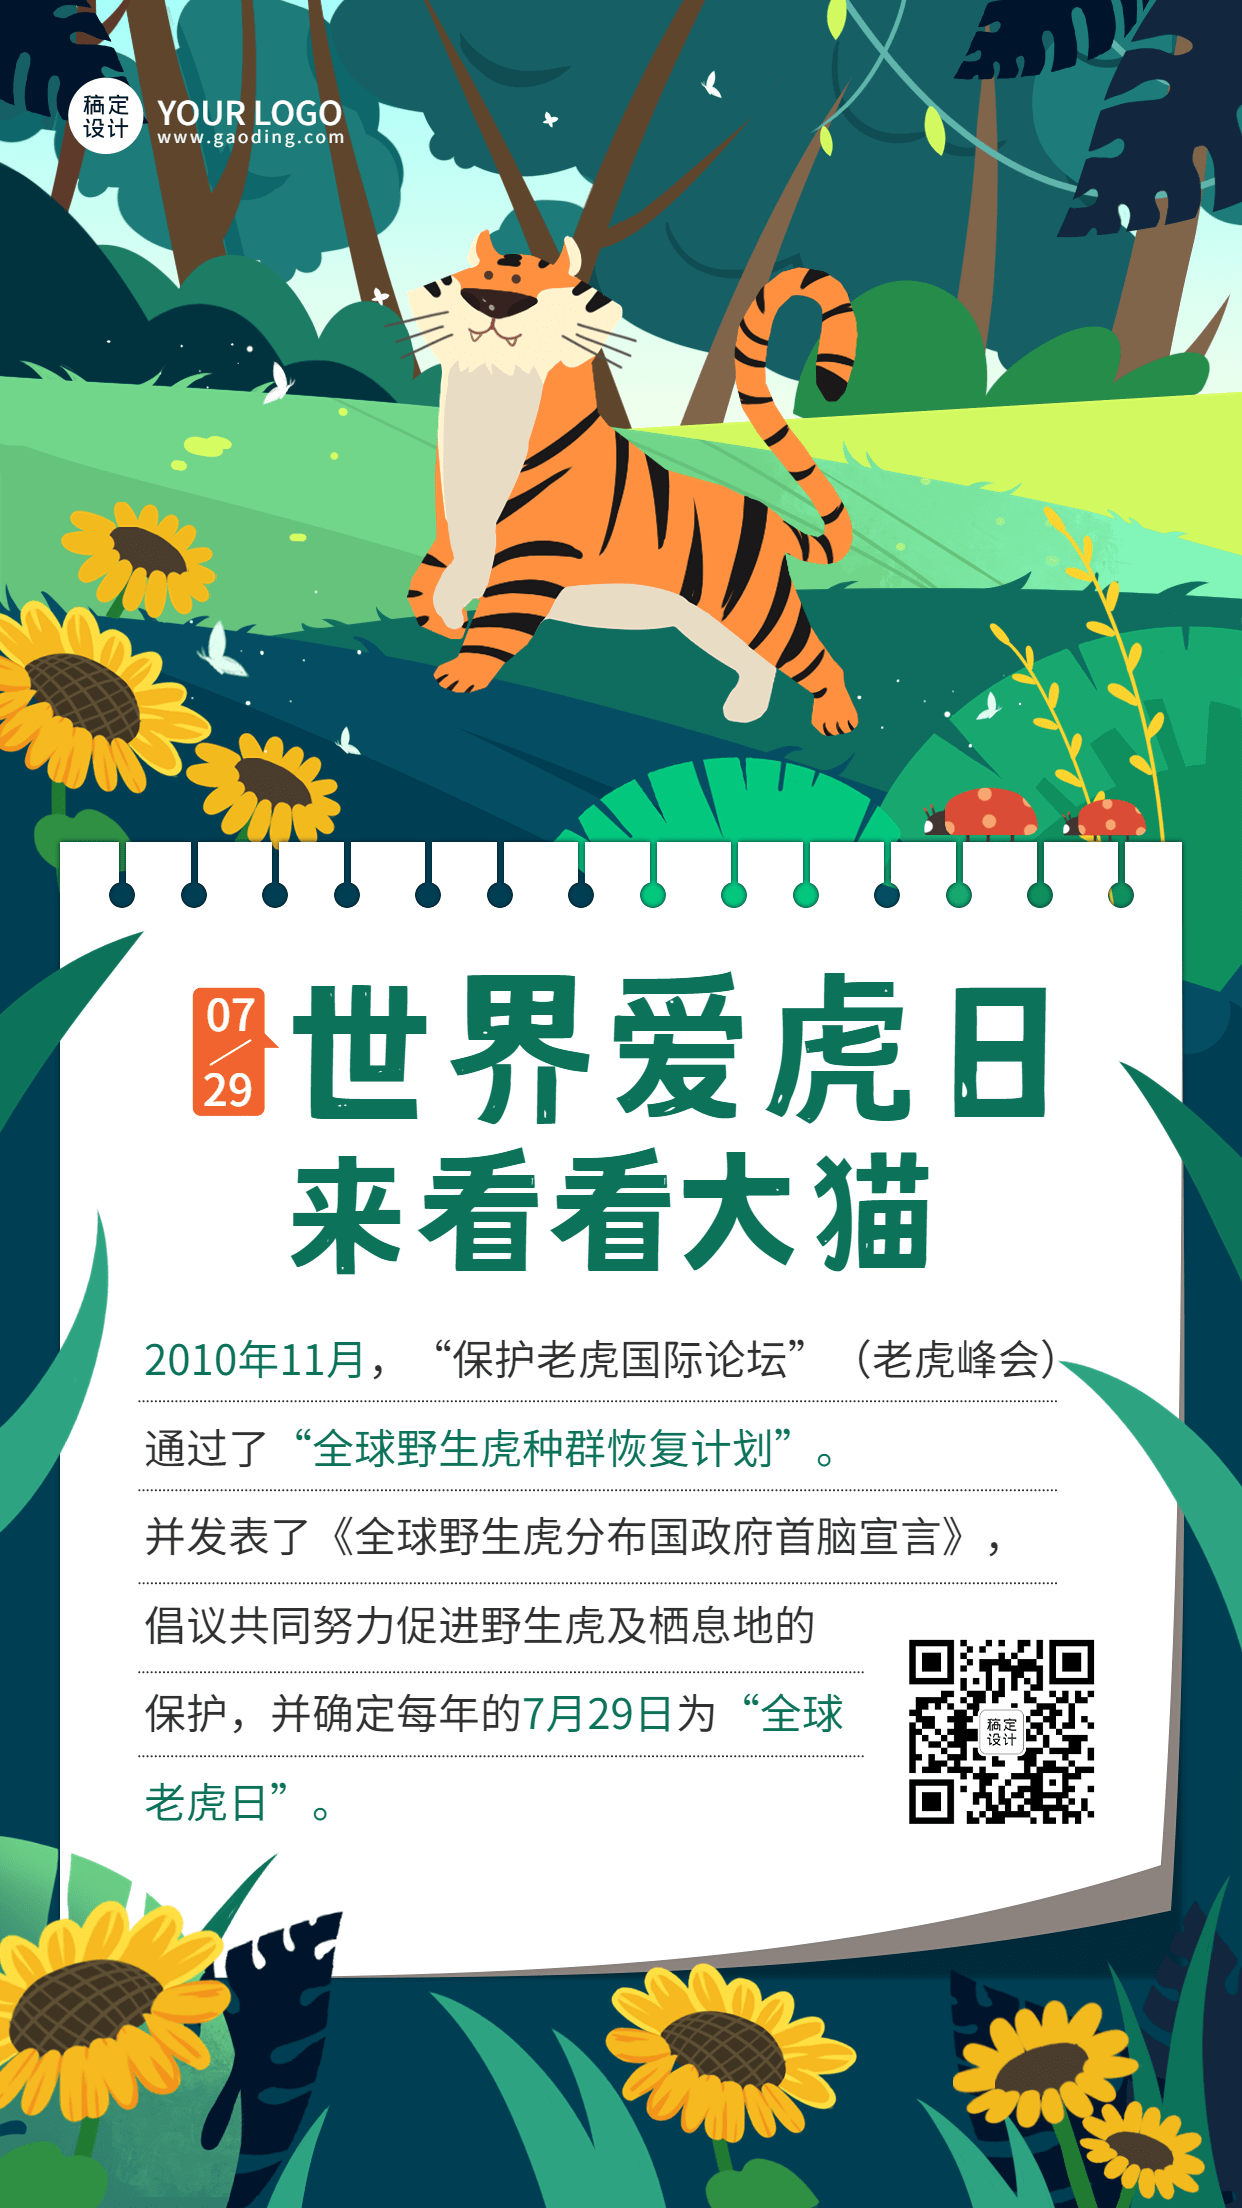 世界爱虎日节日科普动物保护手绘插画手机海报